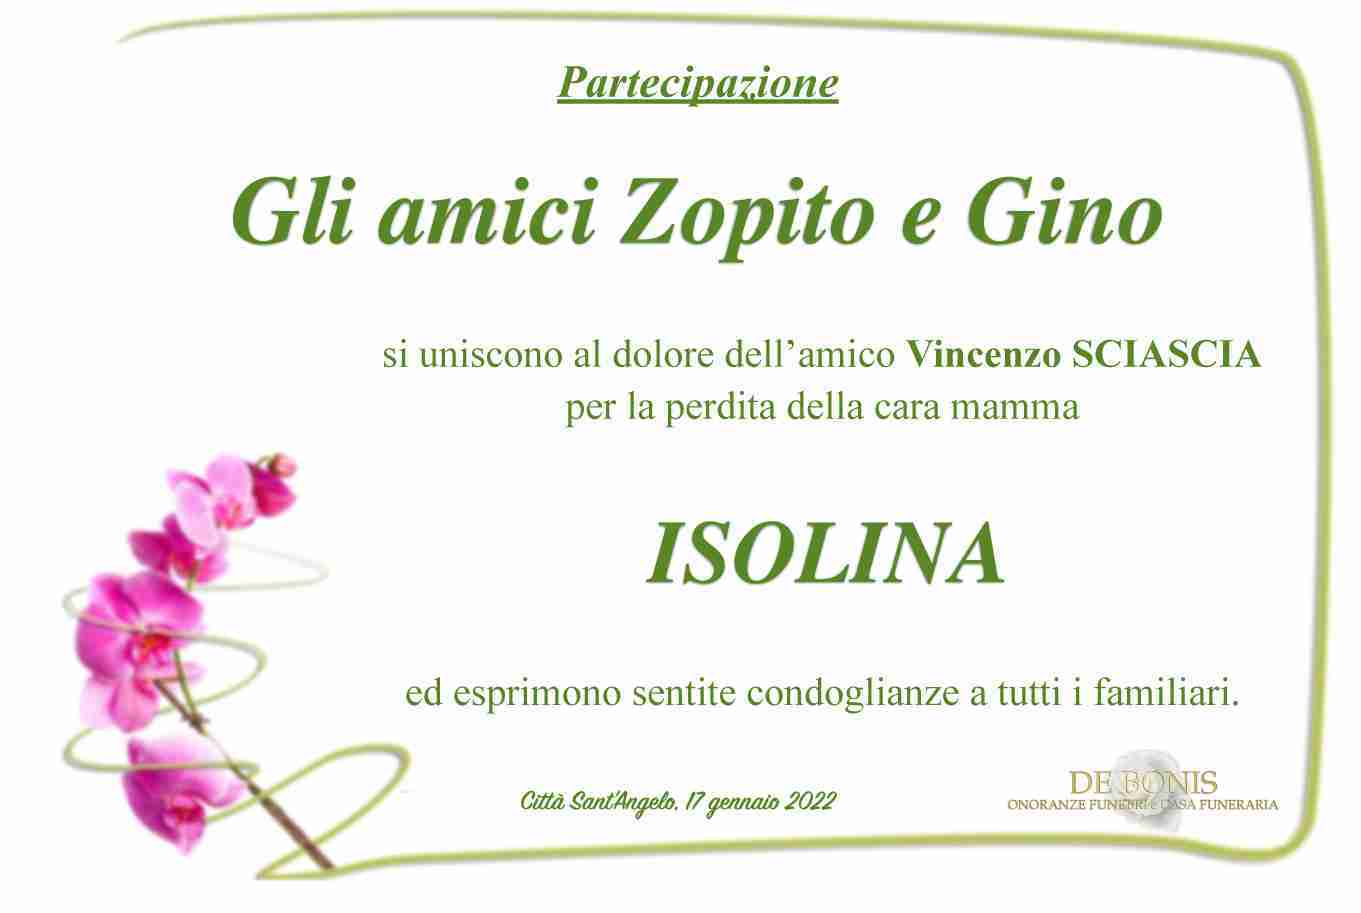 Isolina Di Vittorio